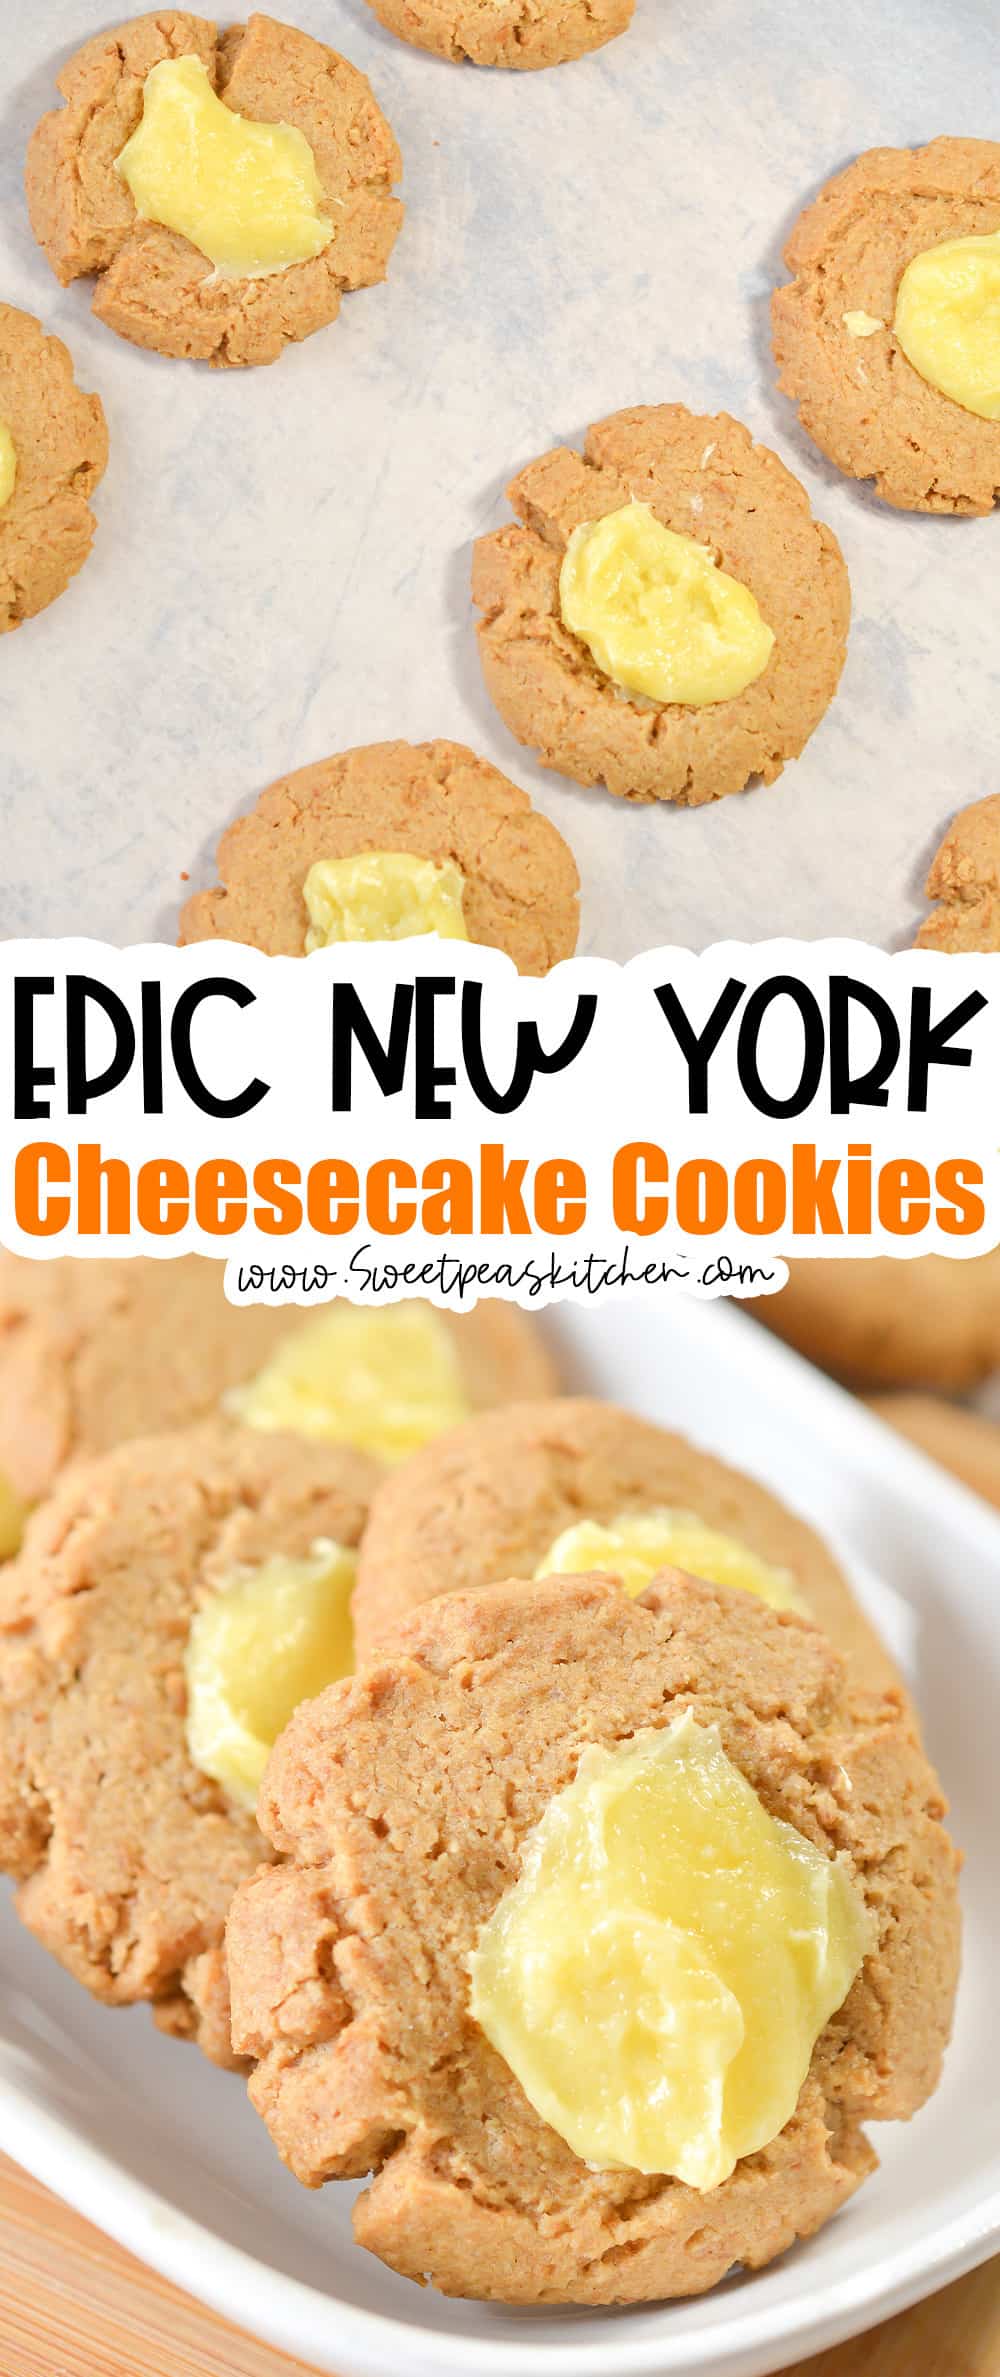 New York Cheesecake Cookies